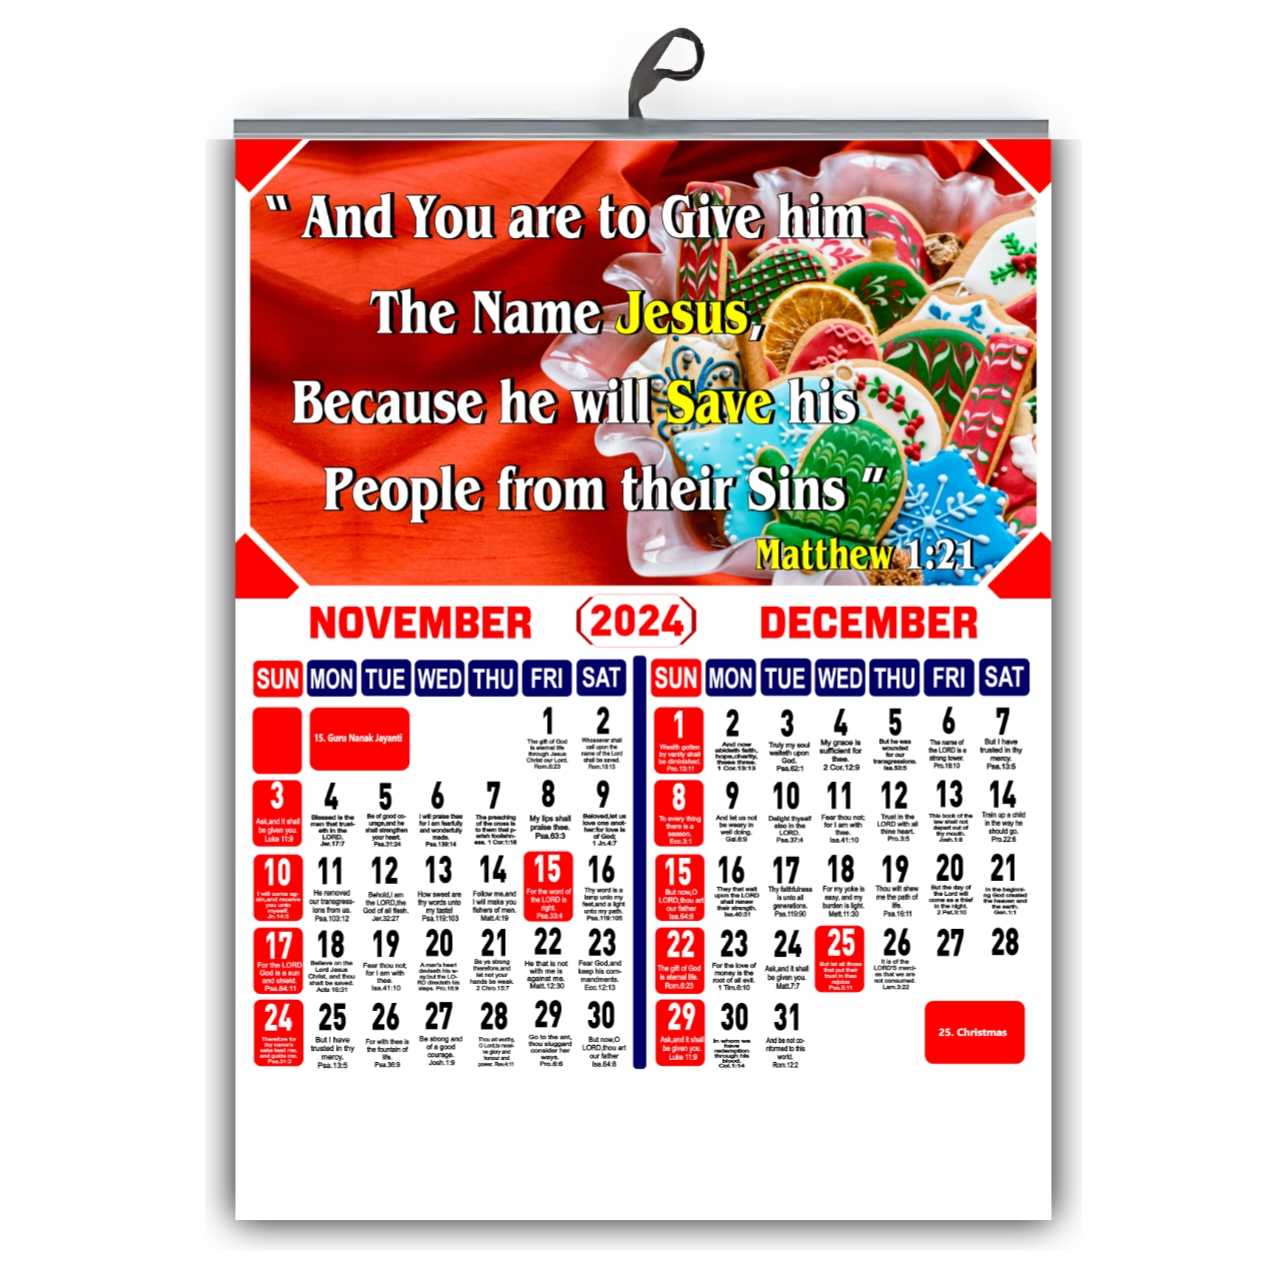 Design No: 63 - 2024 English Bible Verse Wall Calendar - Bulk Wholesale